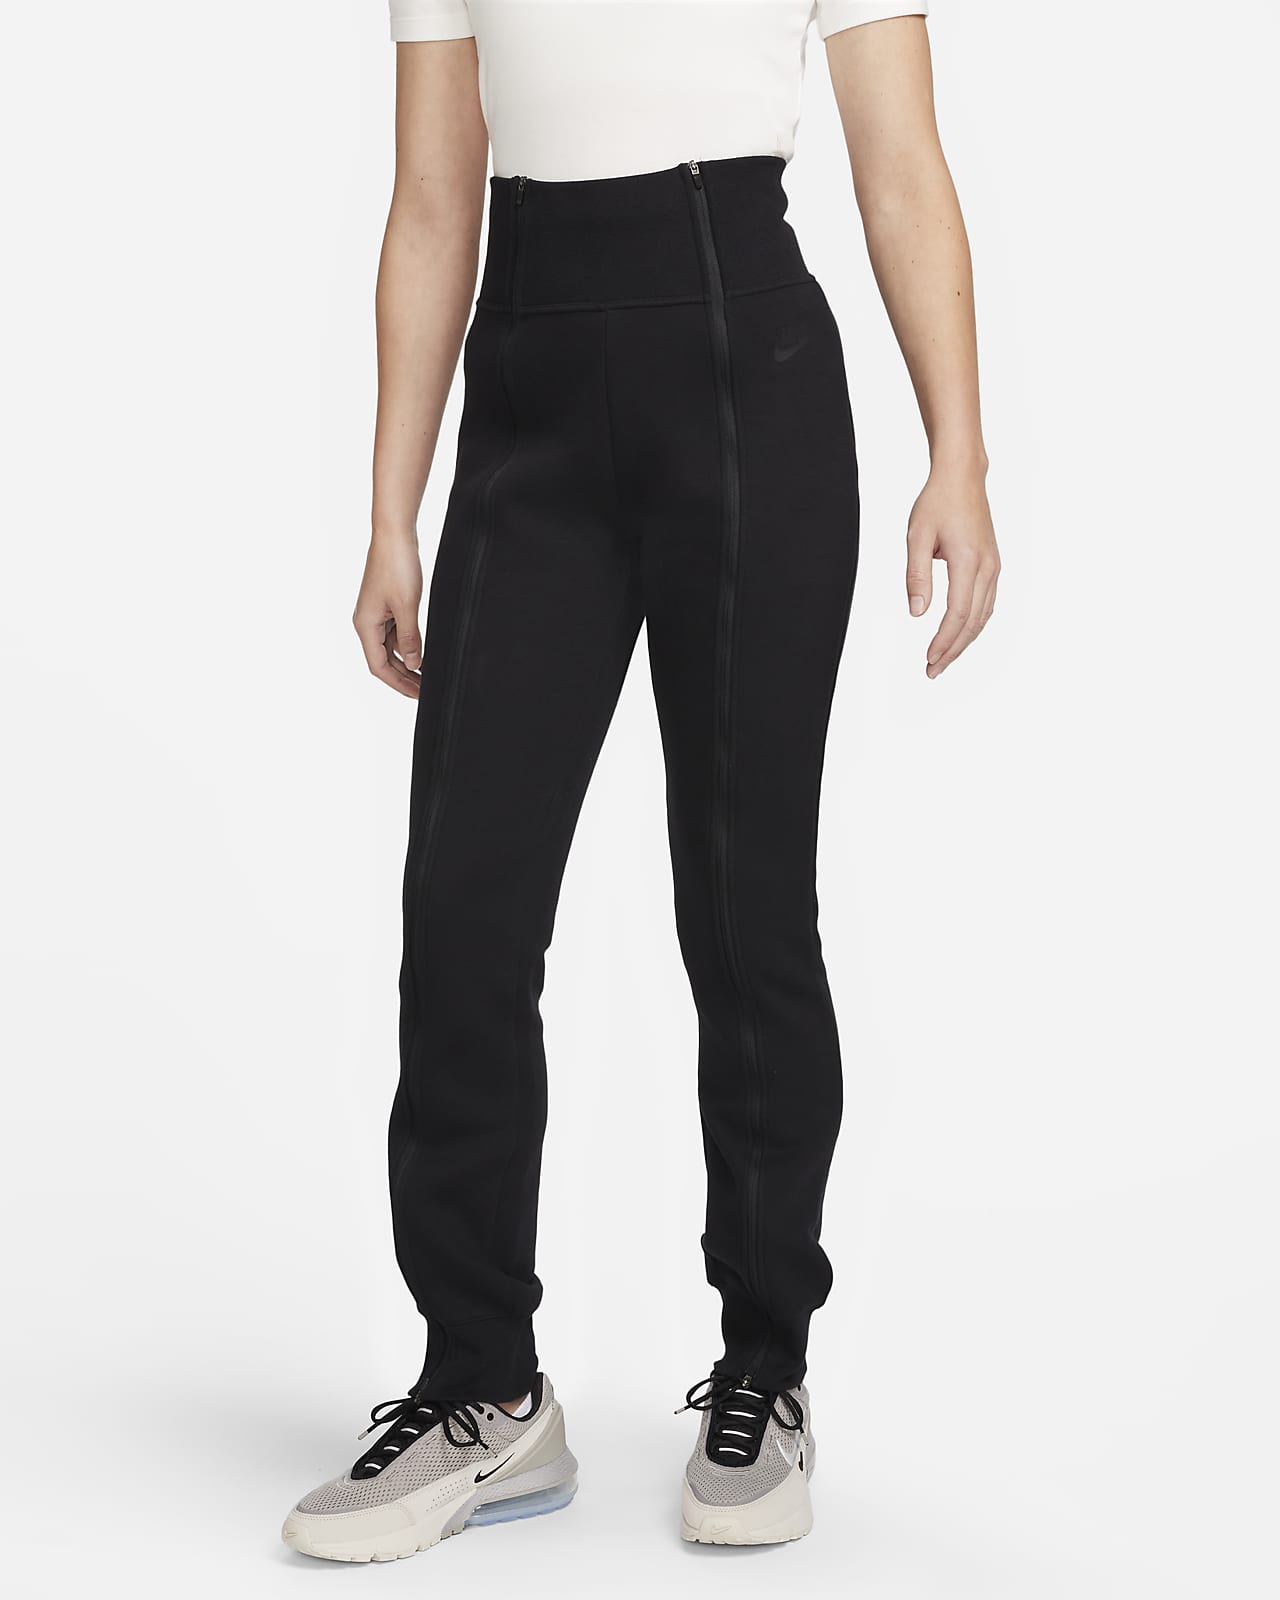 Pants con cierre de ajuste slim y de tiro alto para mujer Nike Sportswear Tech Fleece